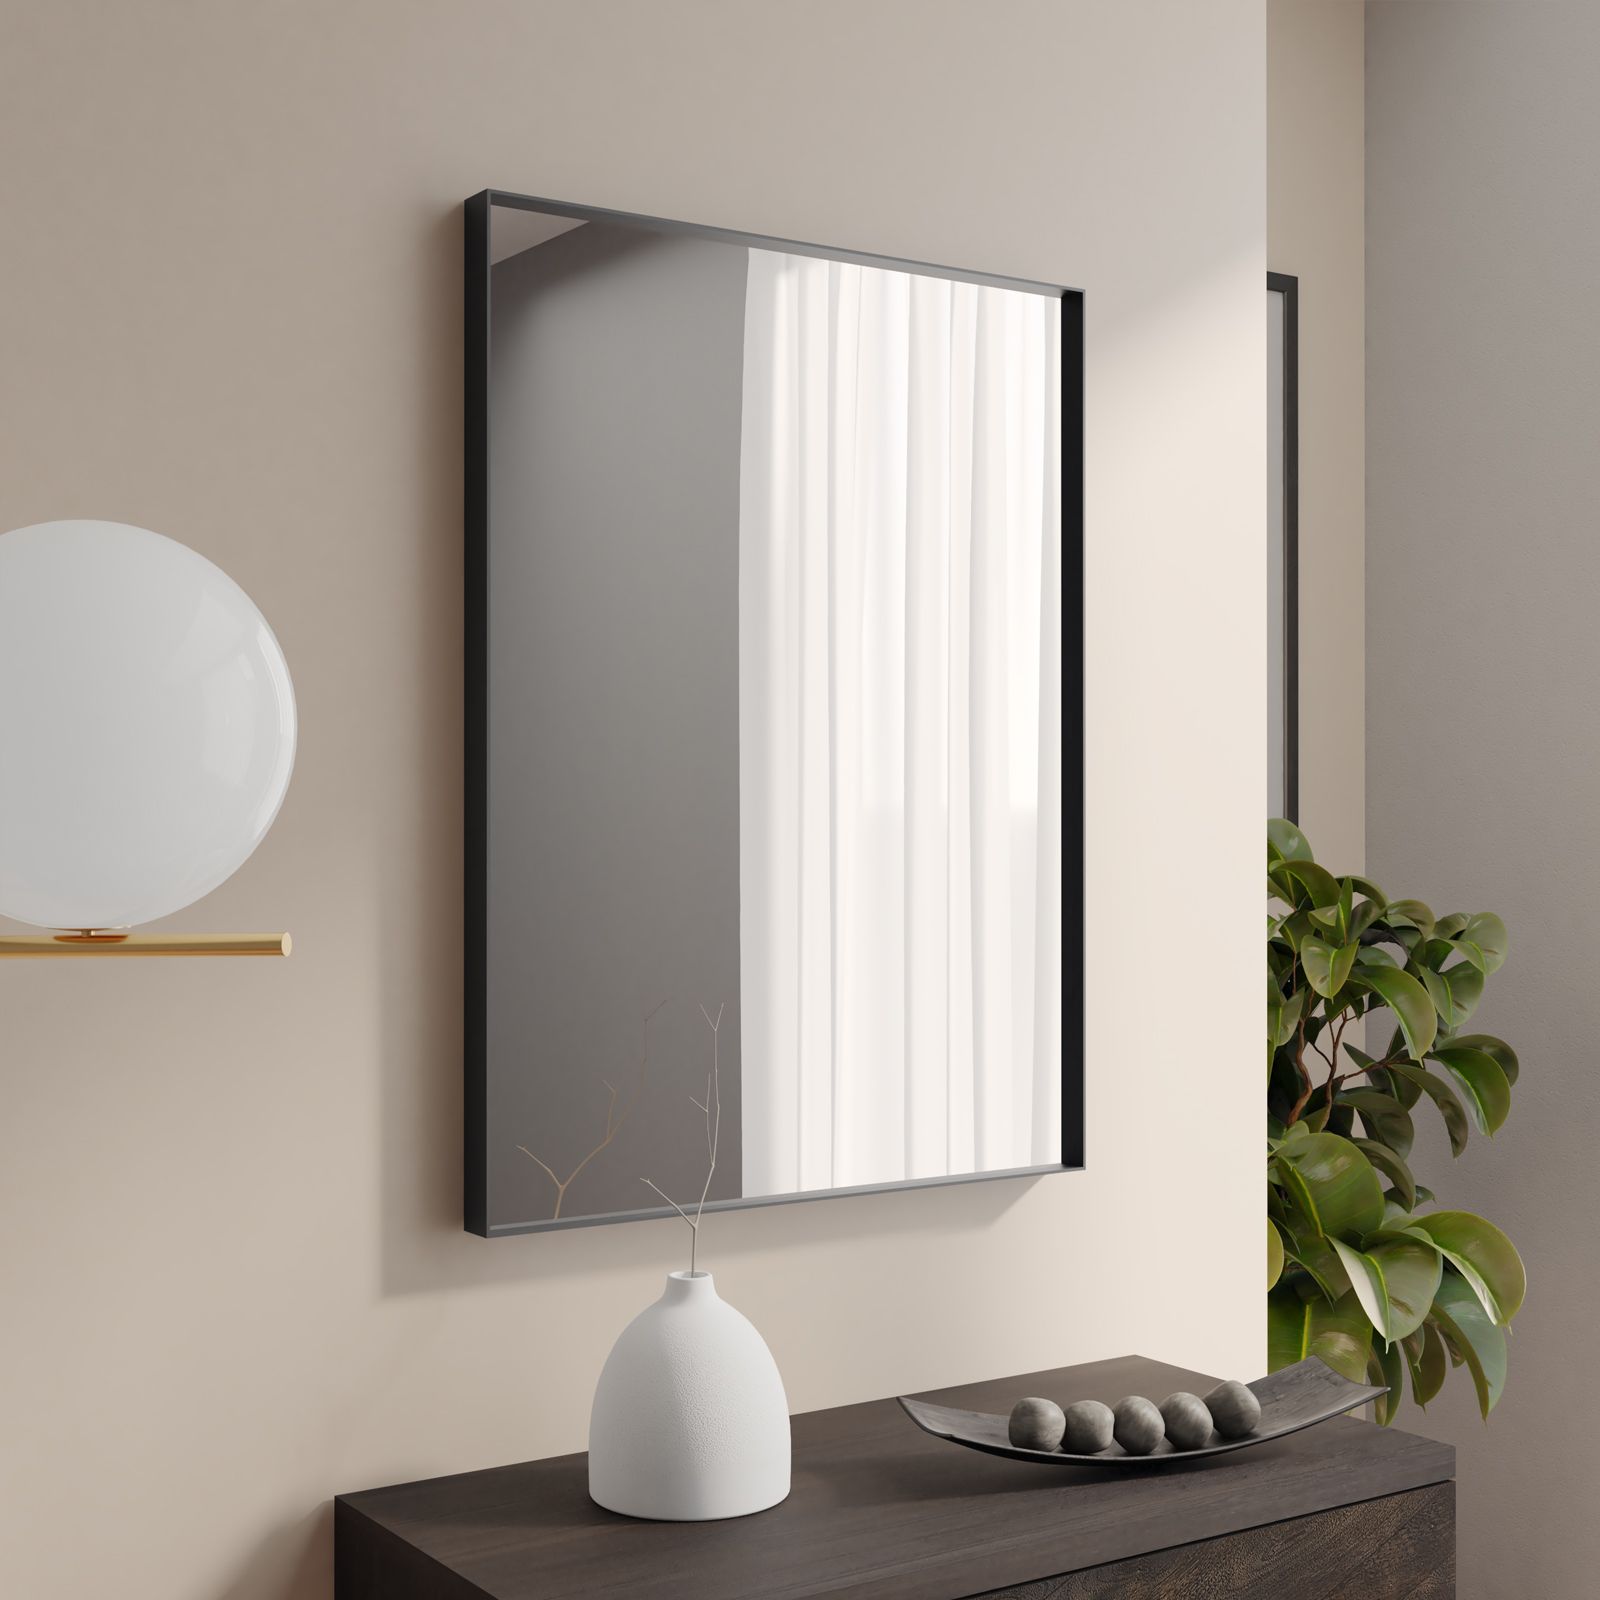 Specchio interno 80x60 cm con cornice in alluminio nero - Decorito